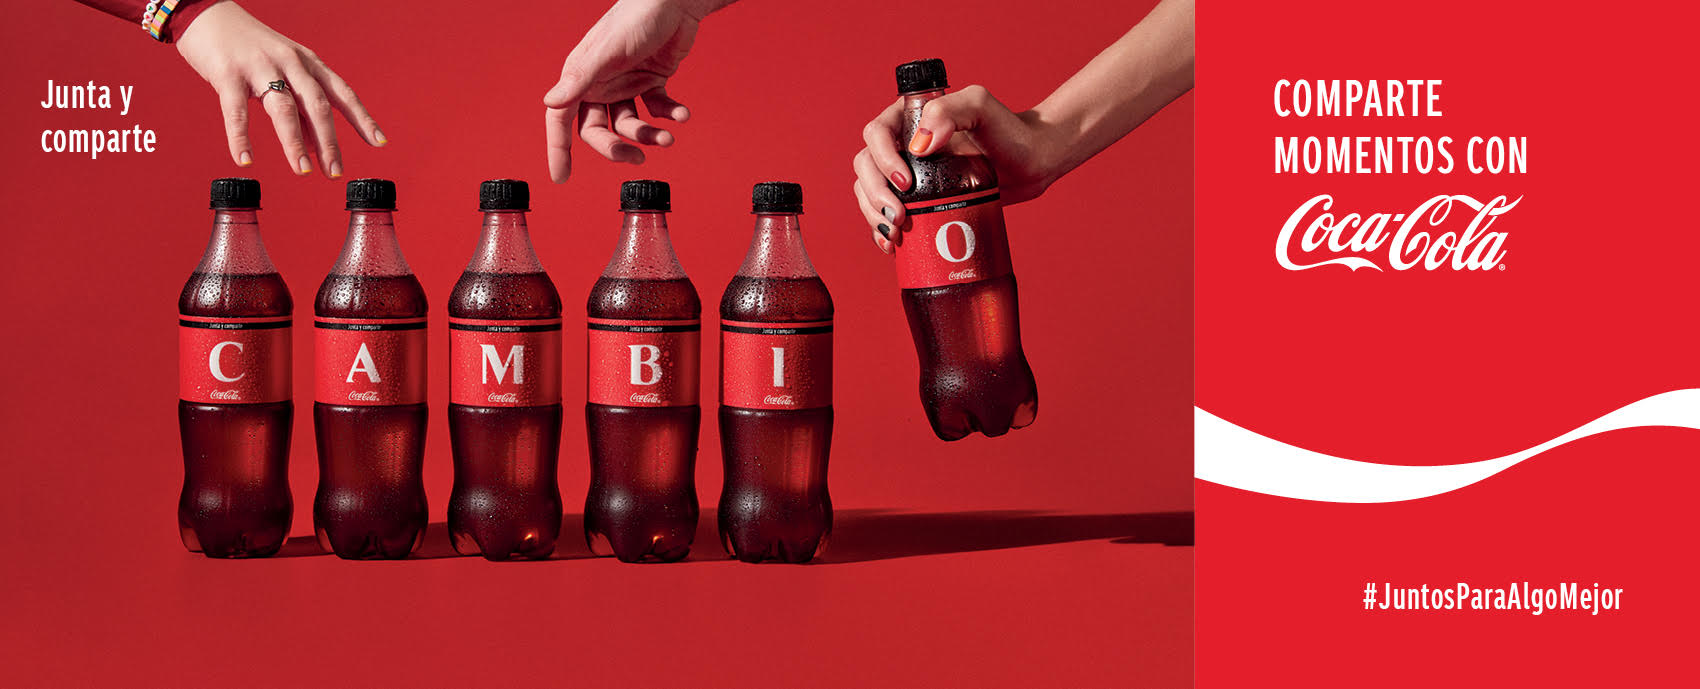 Coca-Cola invita a compartir sentimientos positivos